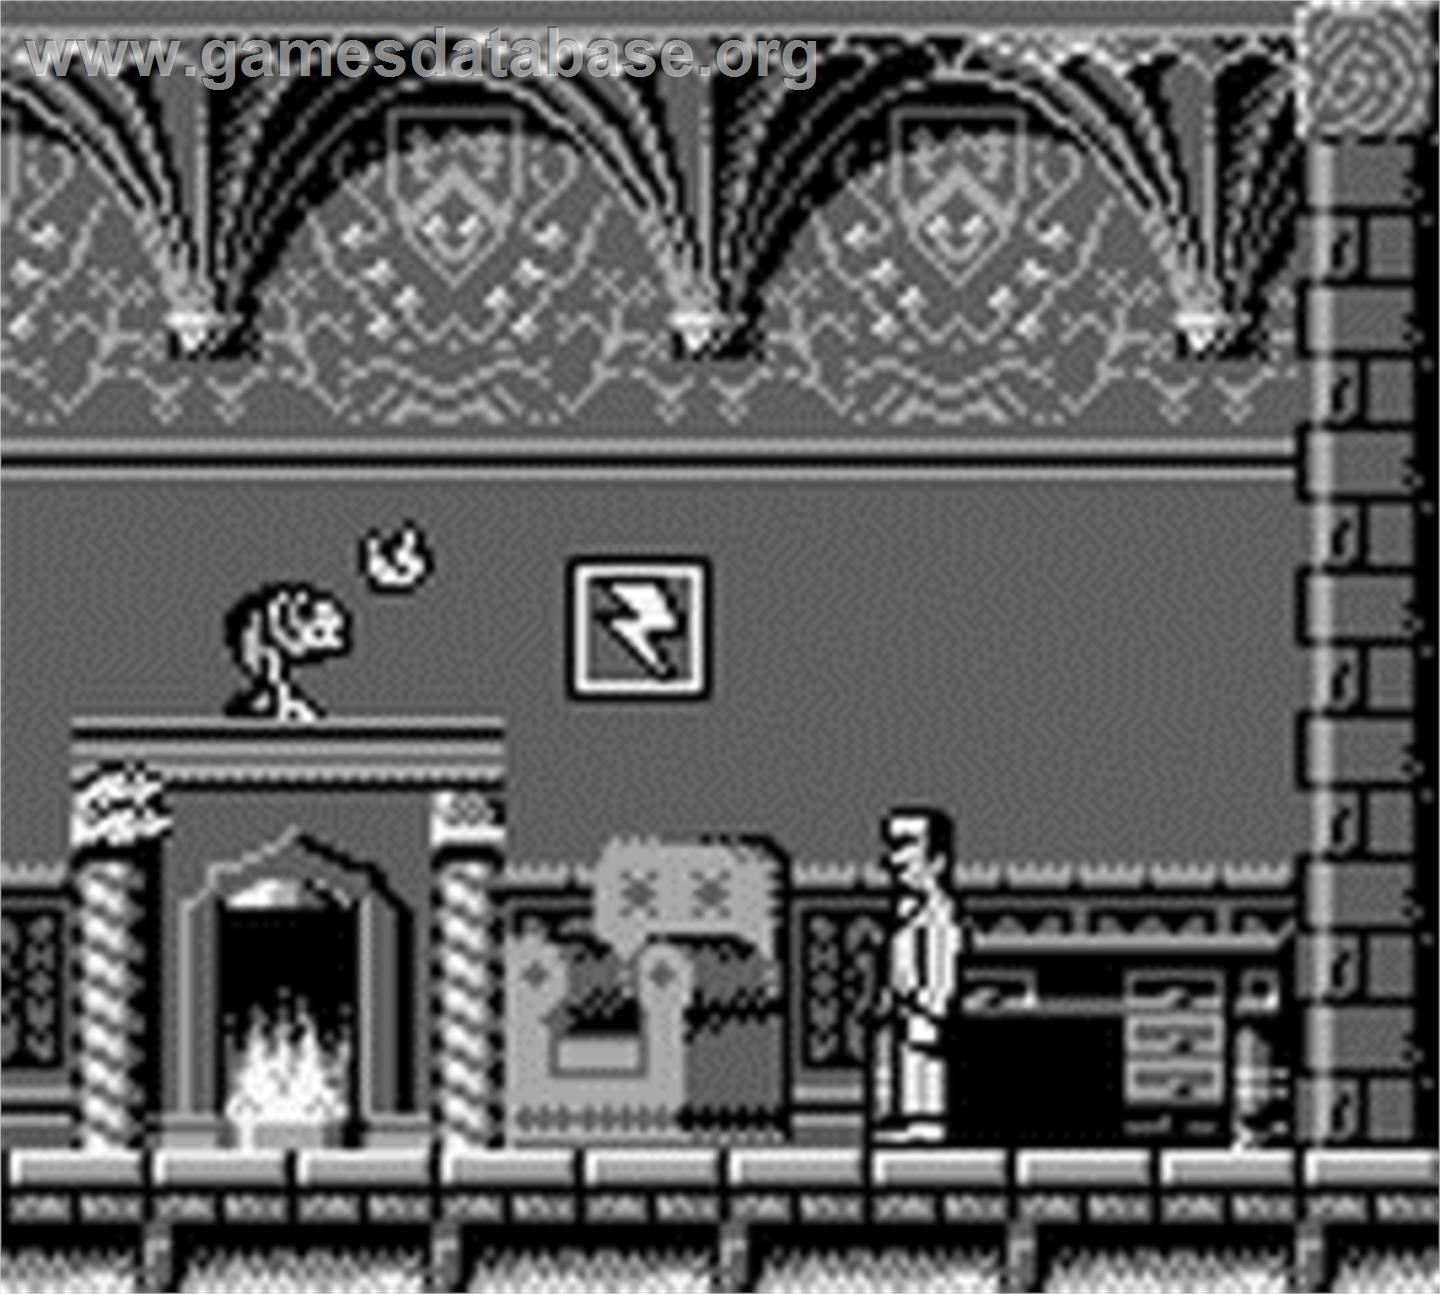 Dr. Franken - Nintendo Game Boy - Artwork - In Game